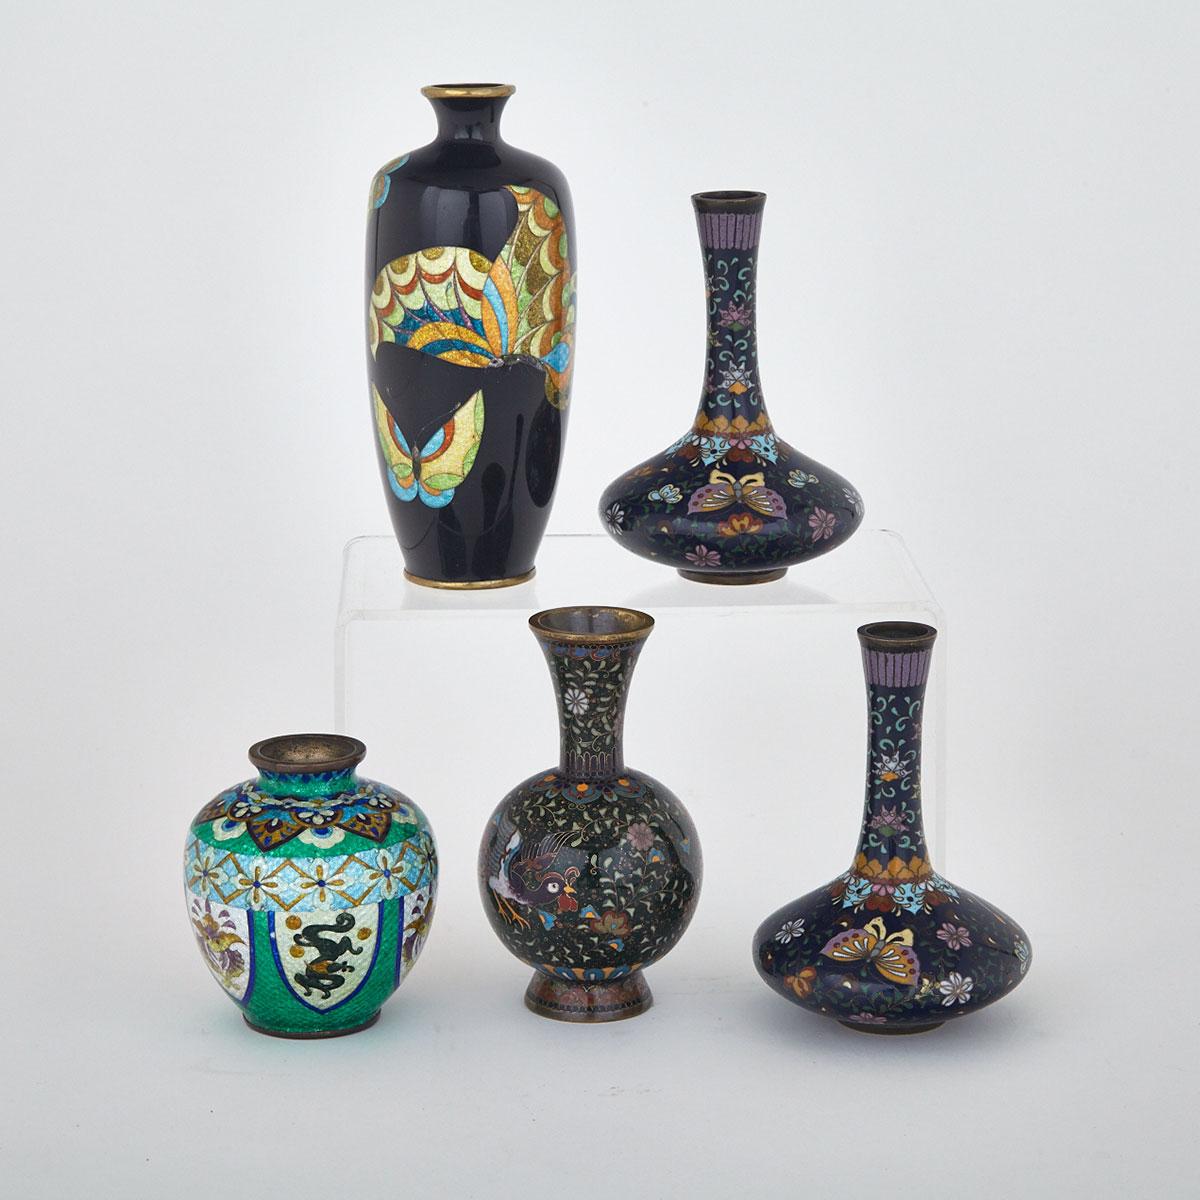 Five Cloisonné Enamel Vessels, China, 20th Century